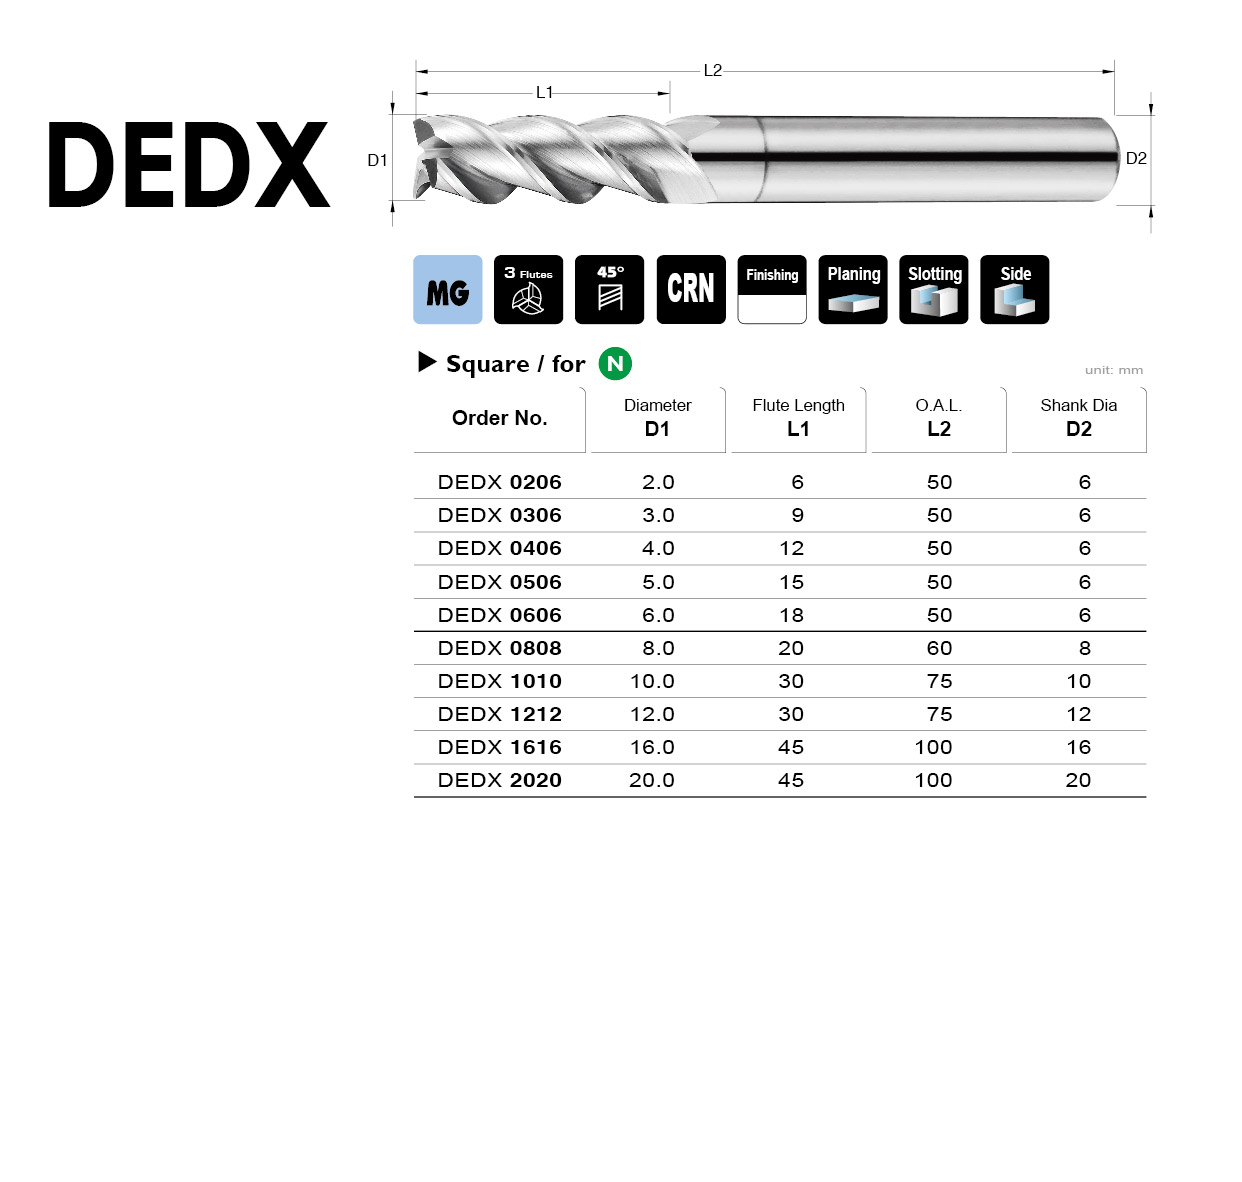 Catalog|DEDX series